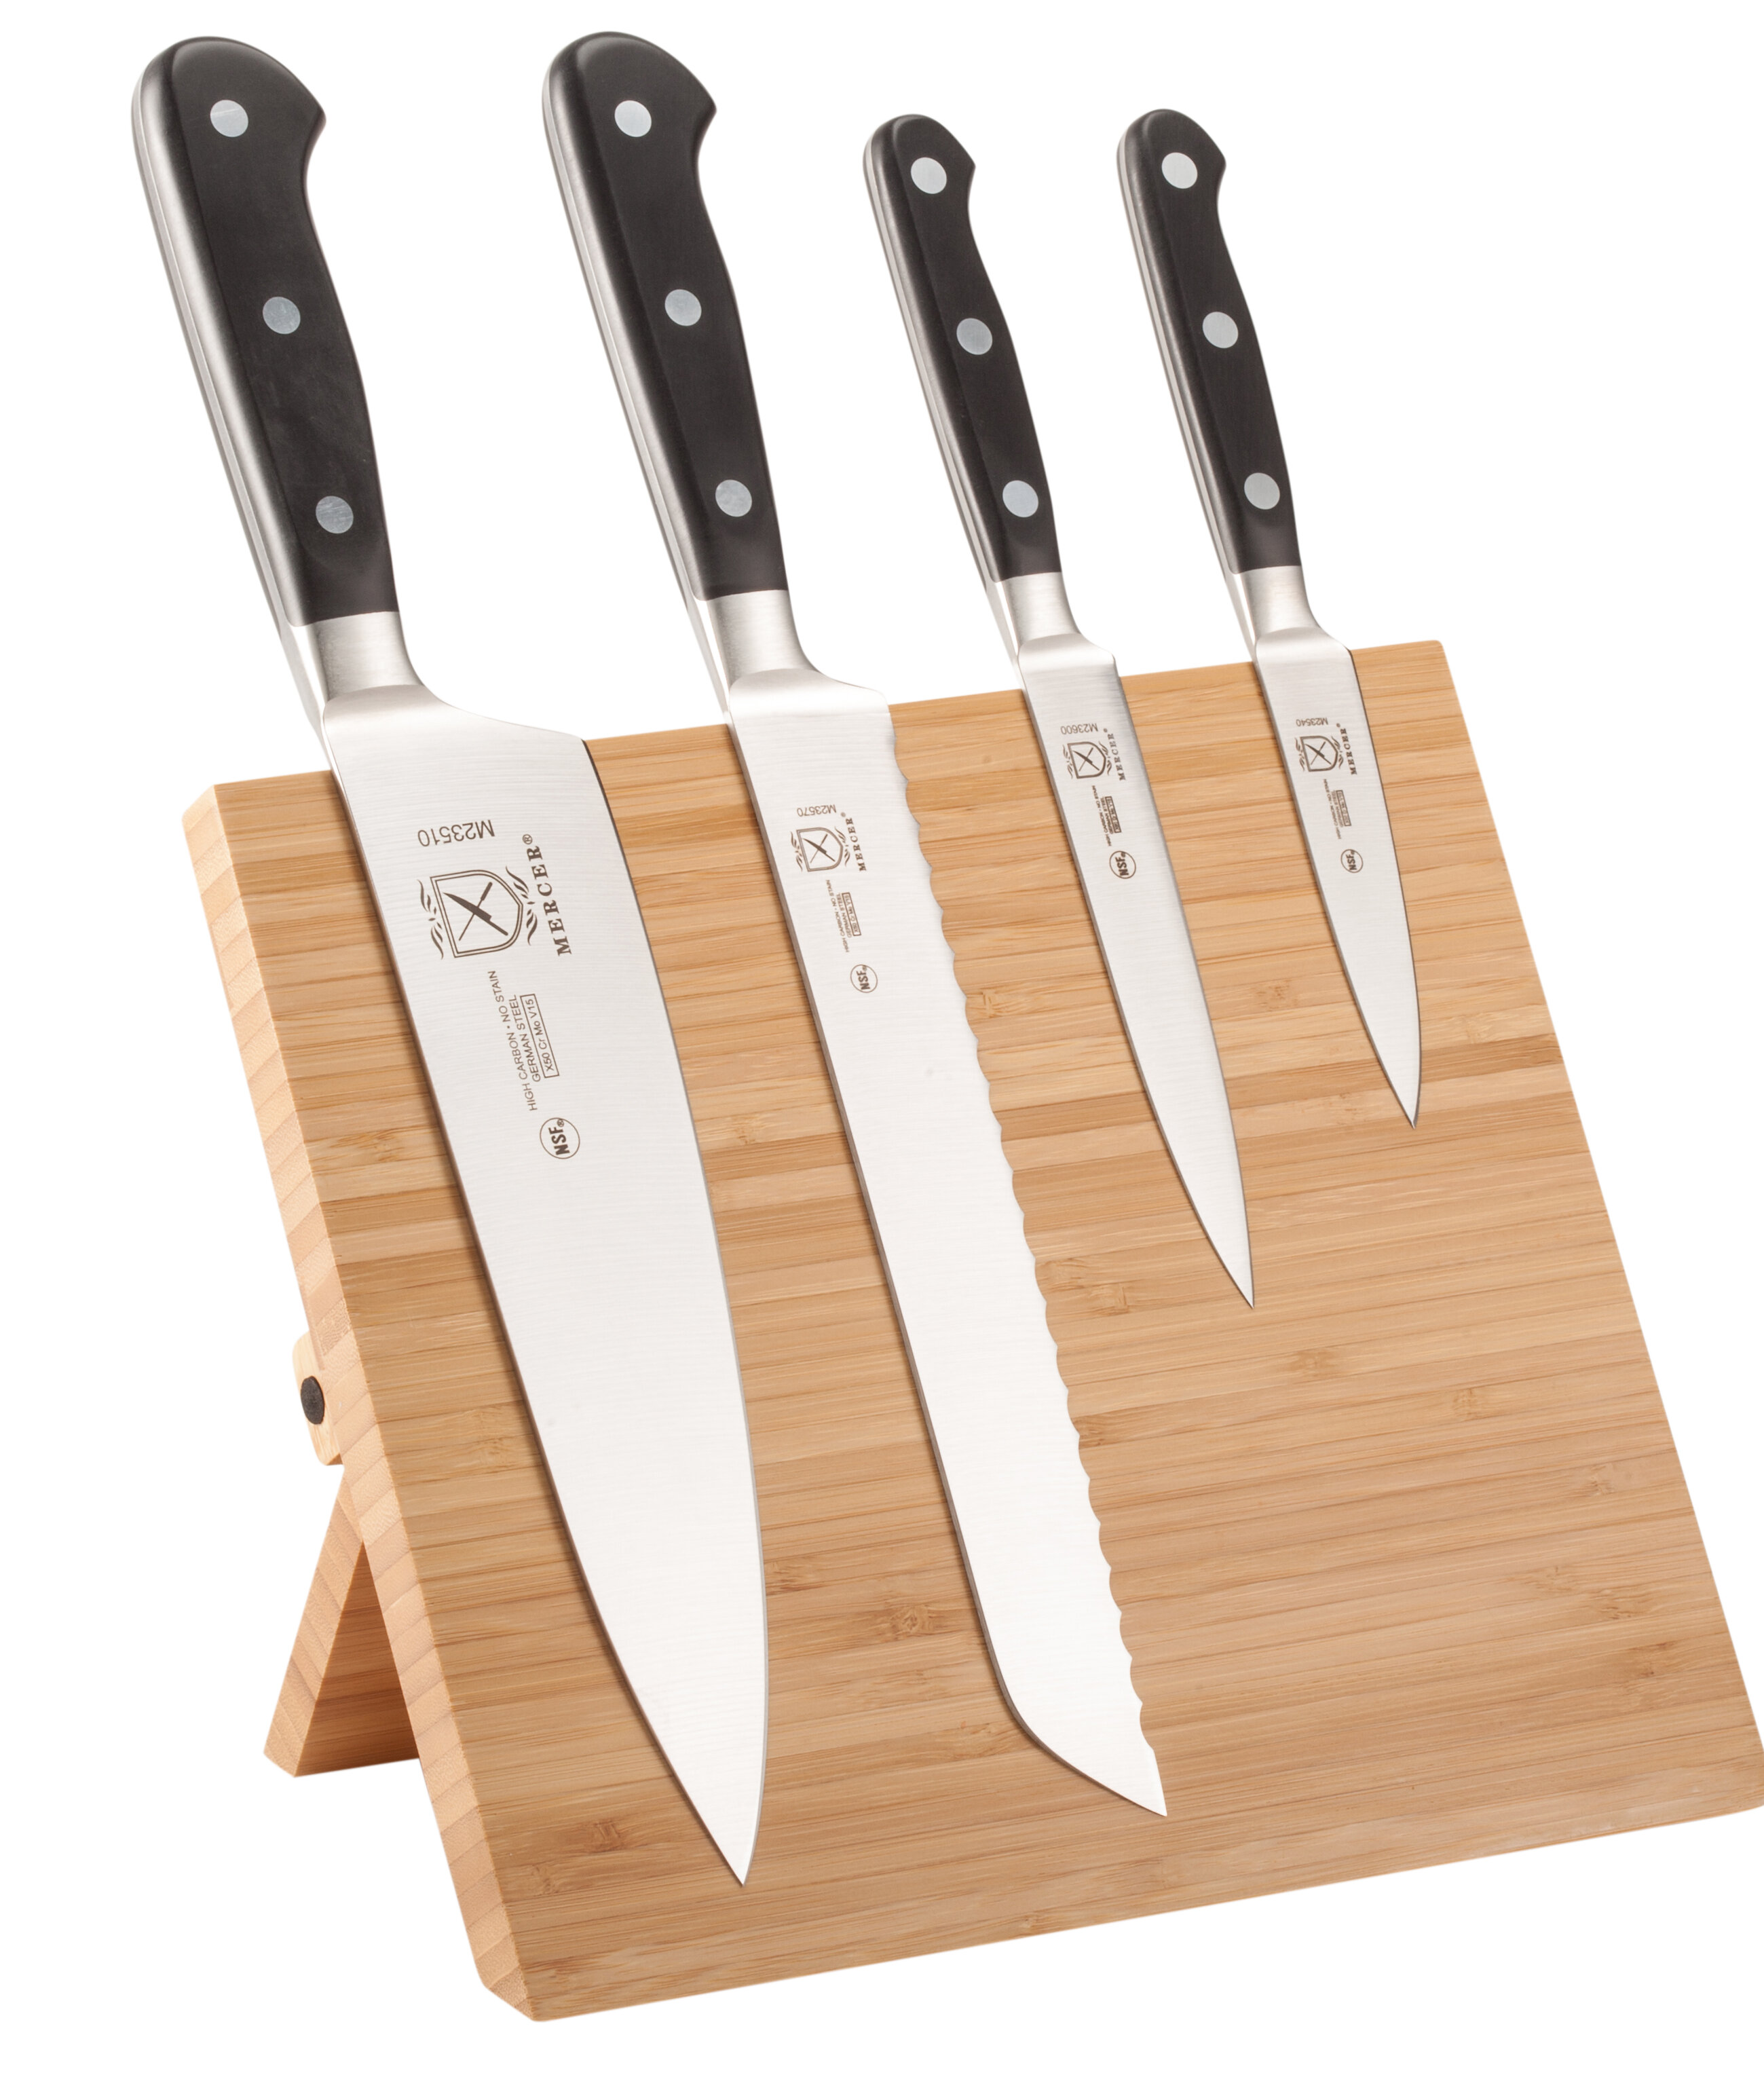 https://assets.wfcdn.com/im/59306181/compr-r85/2982/29828321/mercer-cutlery-renaissance-5-piece-high-carbon-stainless-steel-knife-block-set.jpg